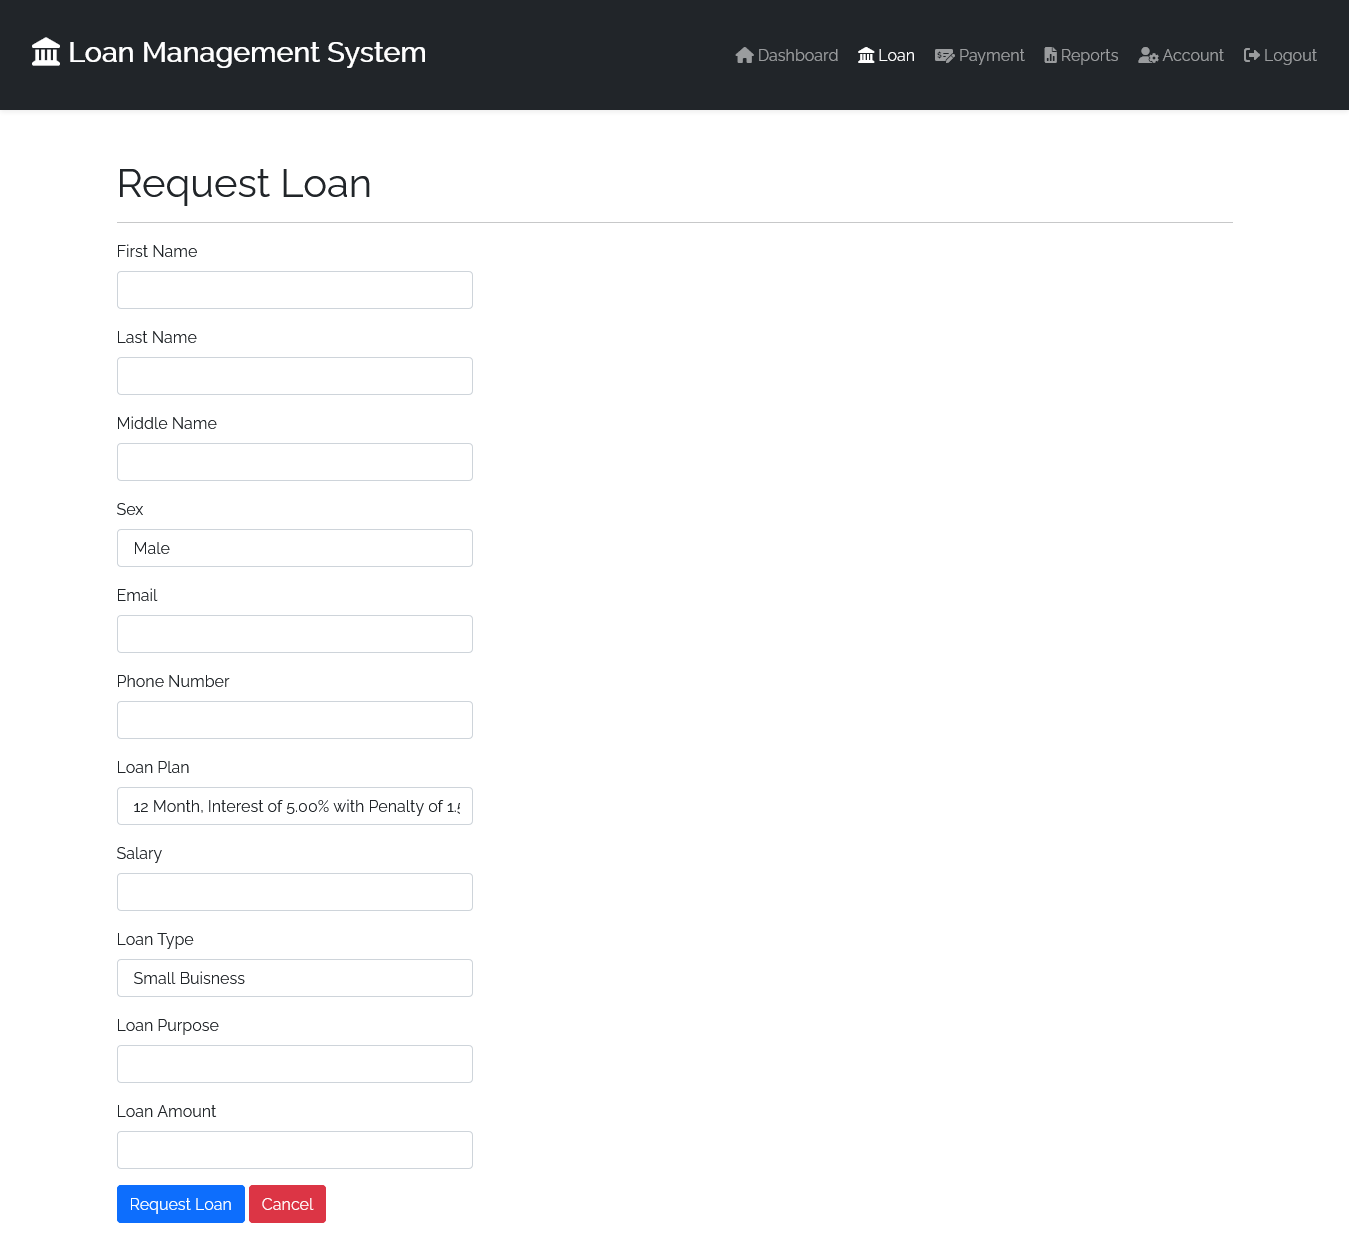 Screenshot 2022-02-19 at 11-29-29 Loan - LoanManagementSystem.png